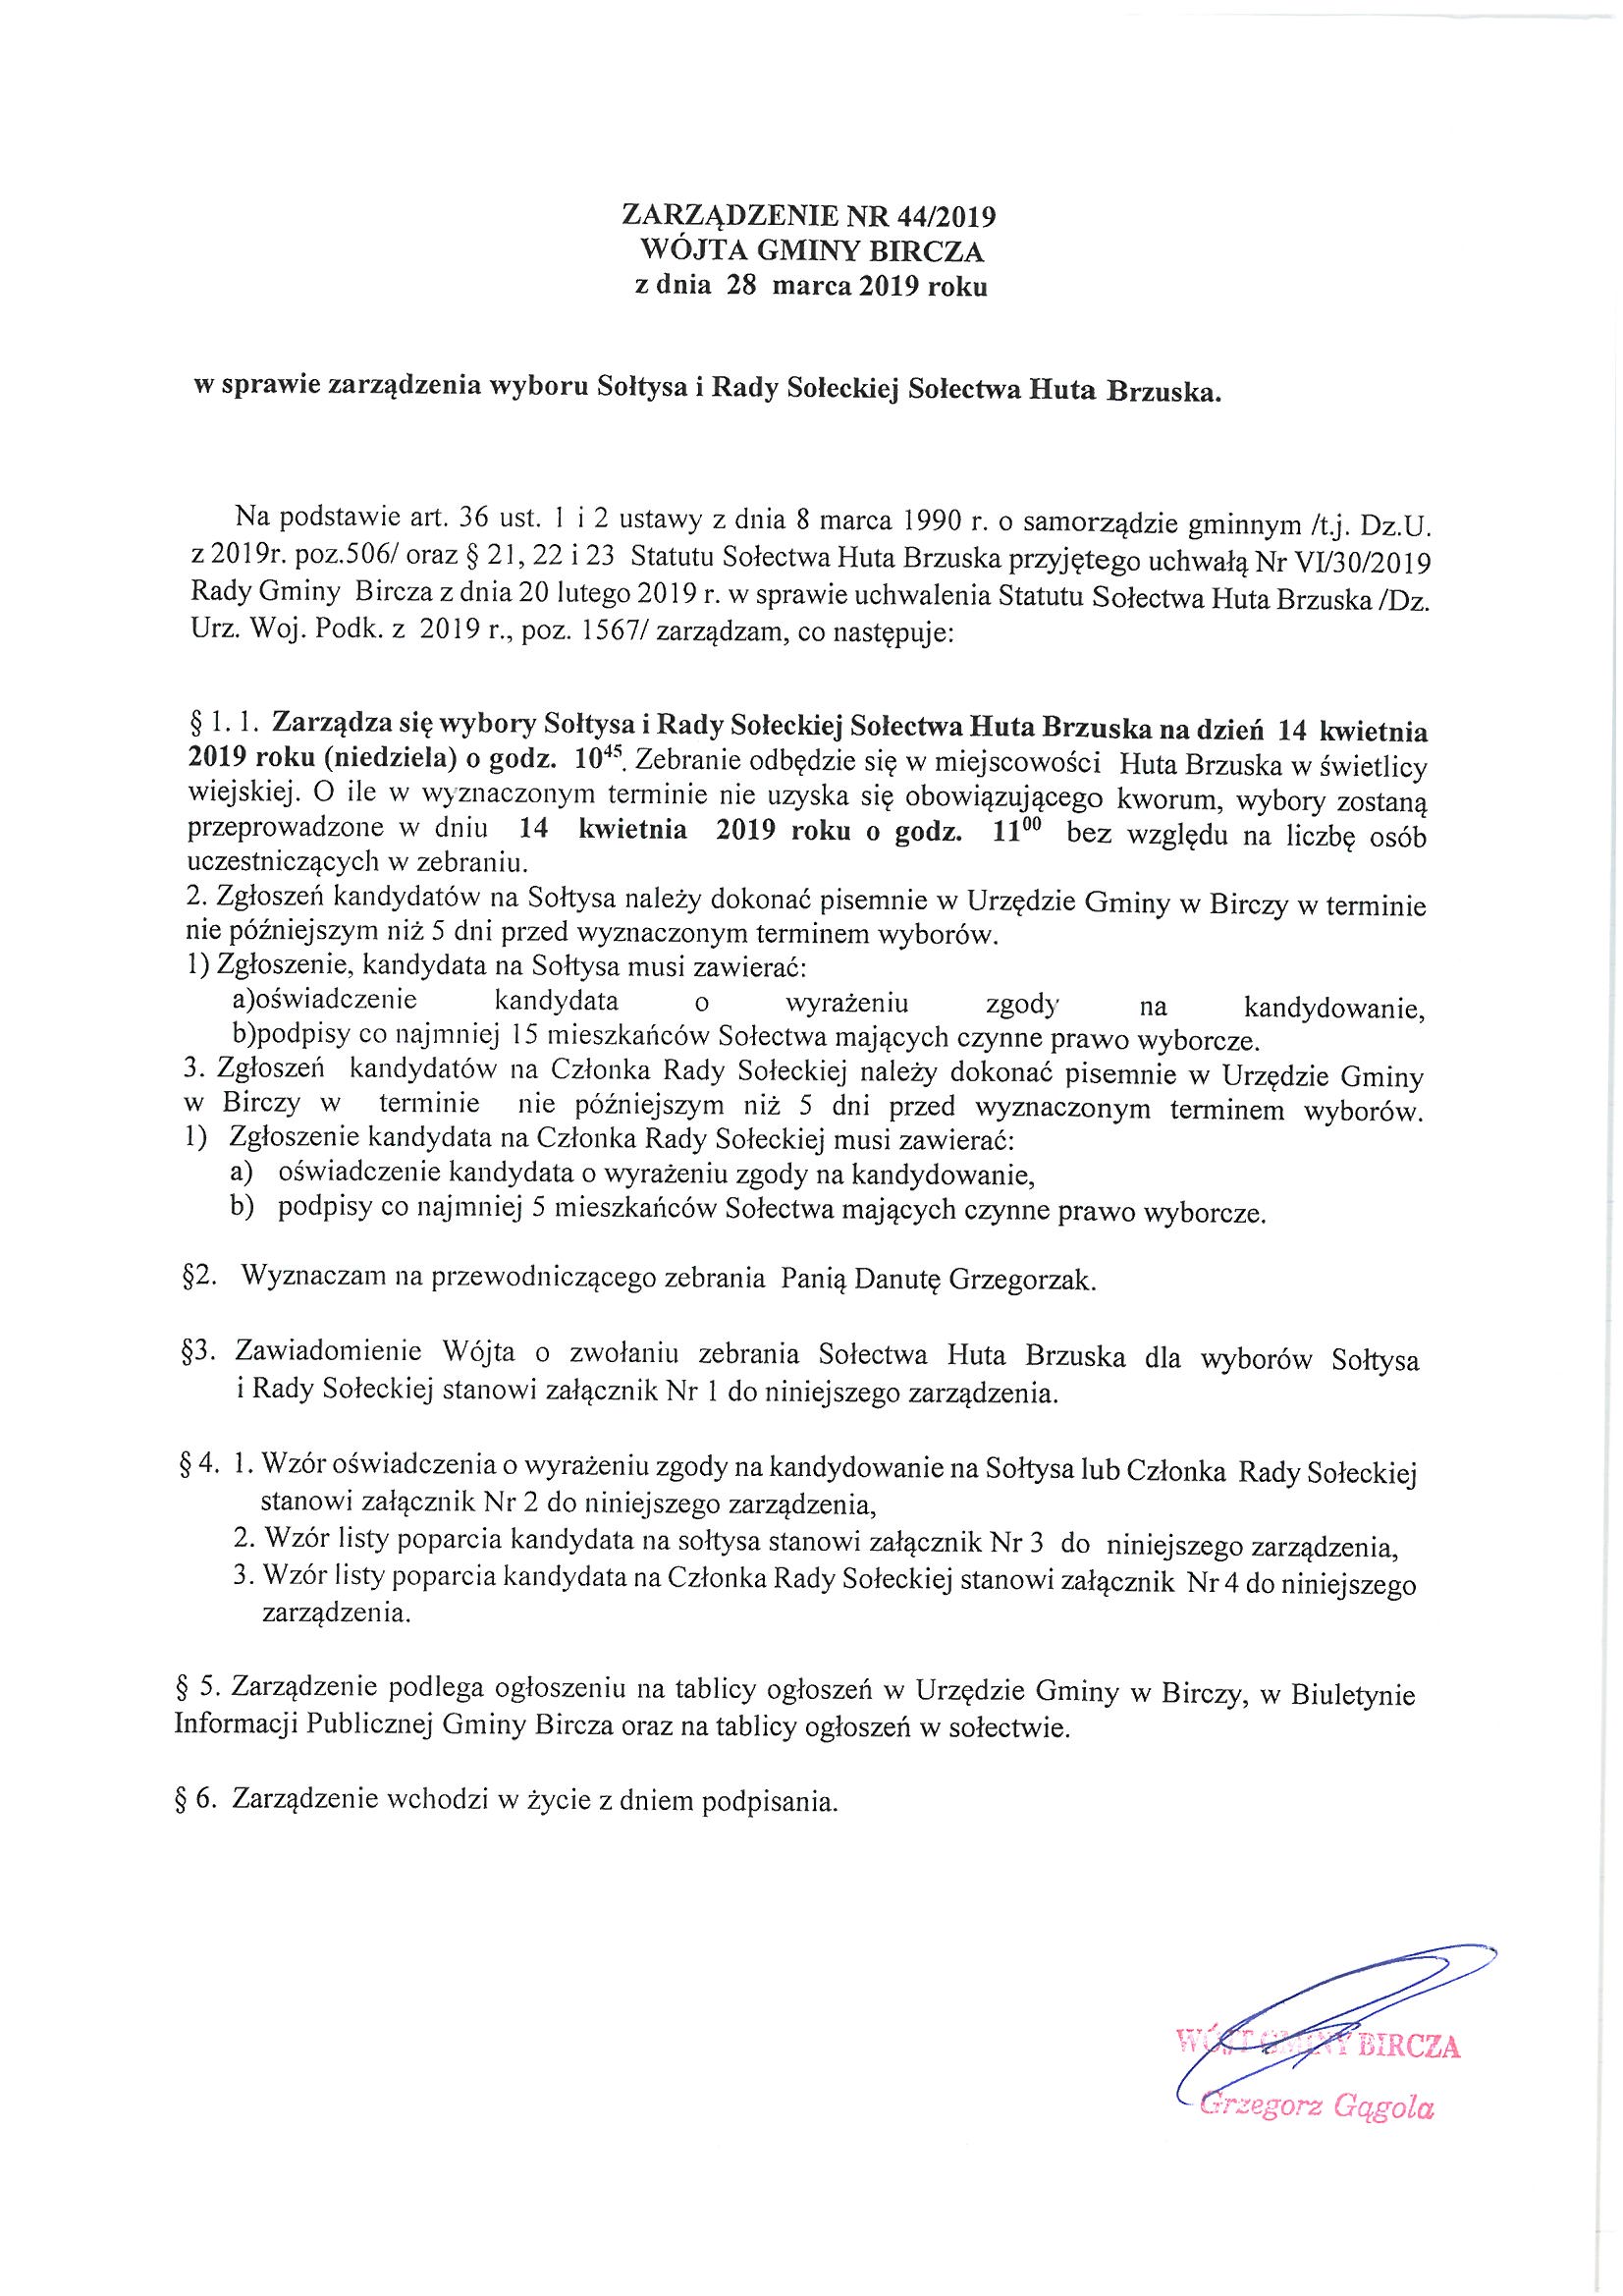 ------- Zarządzenie w sprawie wyboru Sołtysa i Rady Sołeckiej Huta Brzuska.jpg